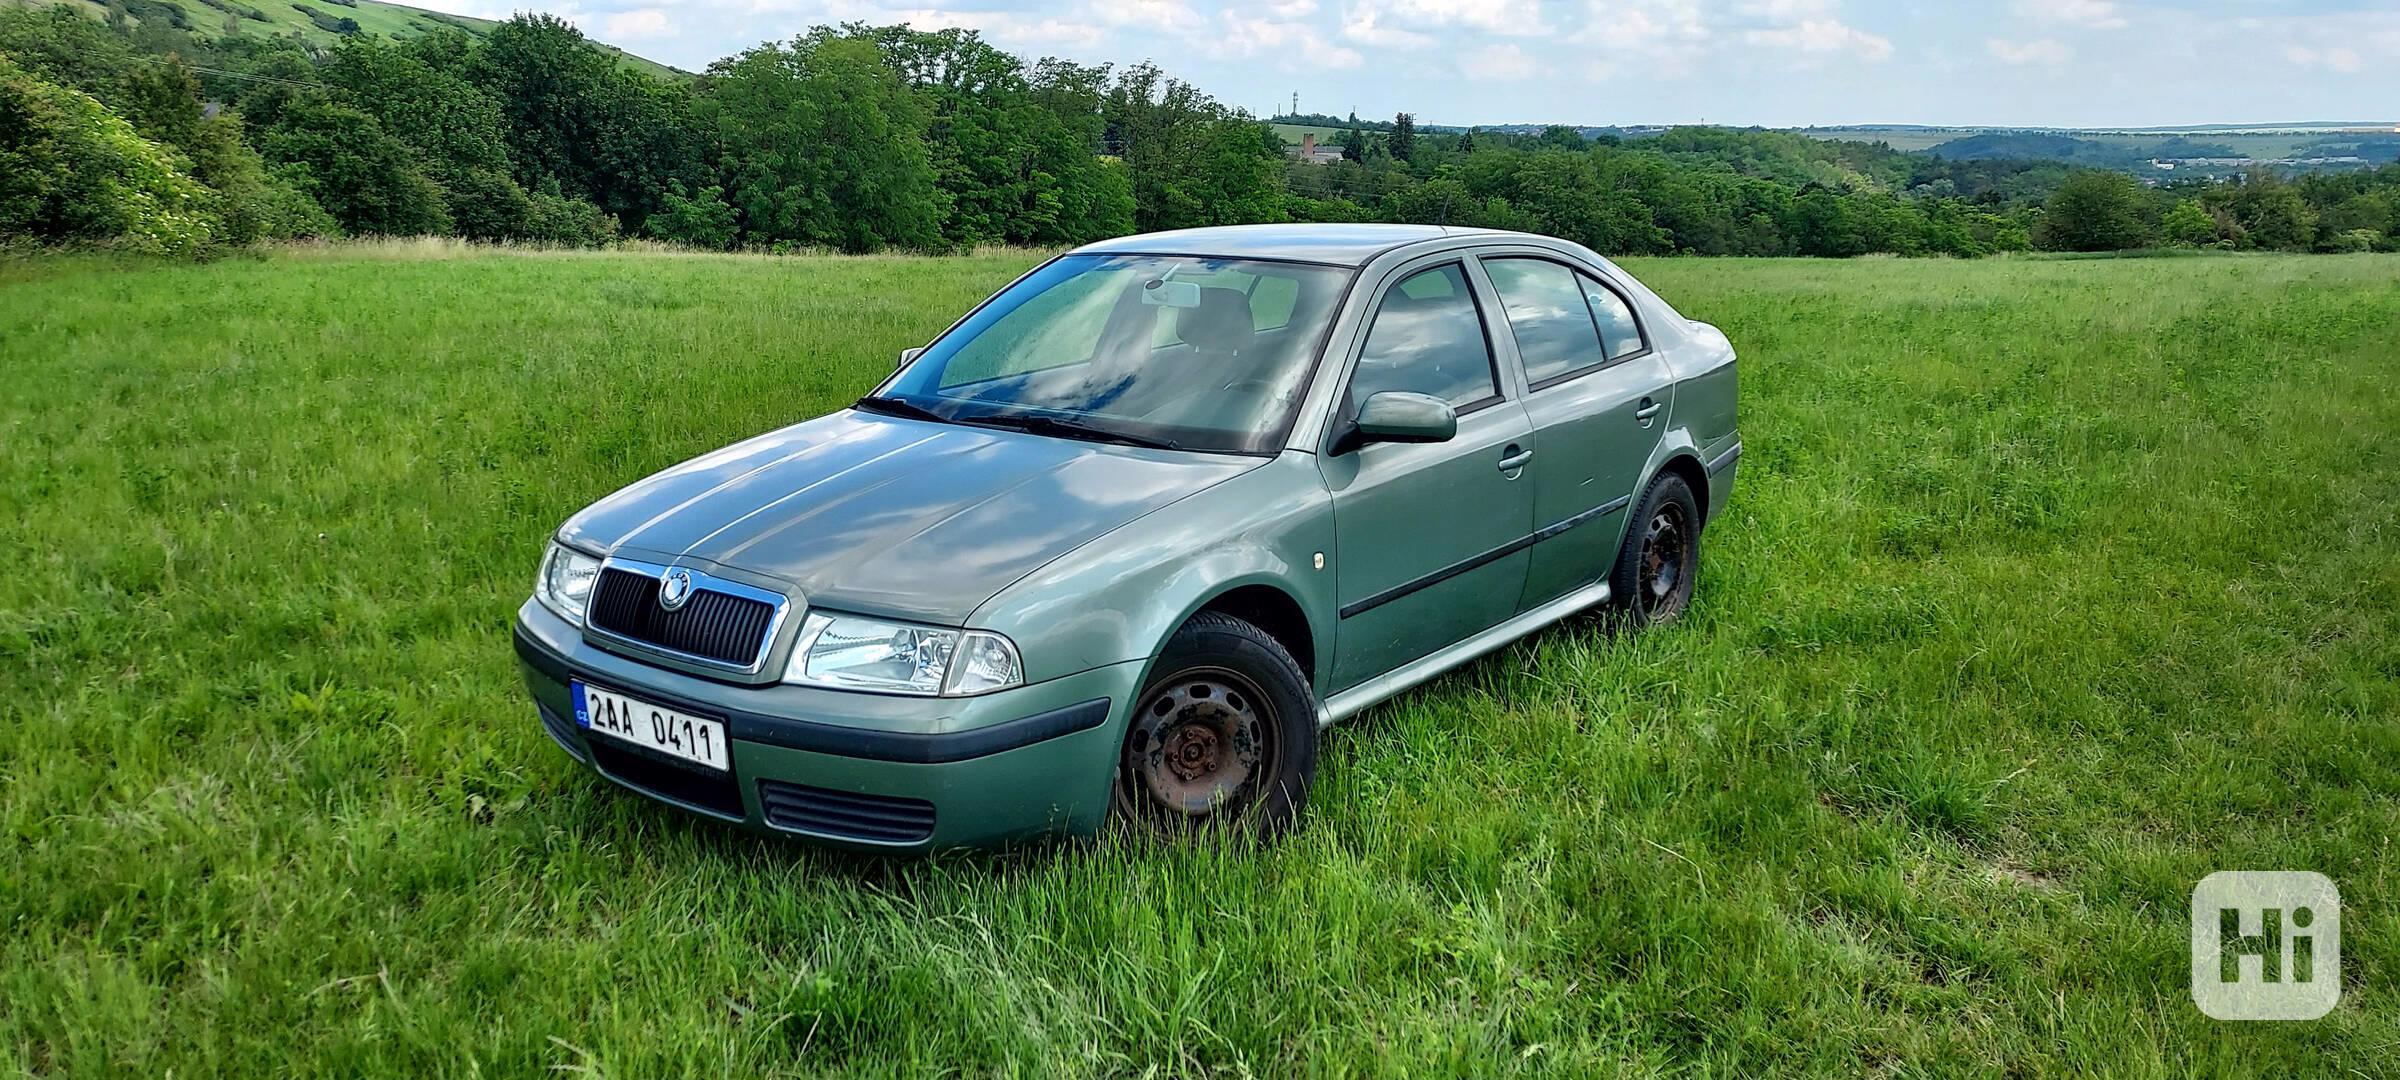 Škoda Octavia I 1.6 i - foto 1